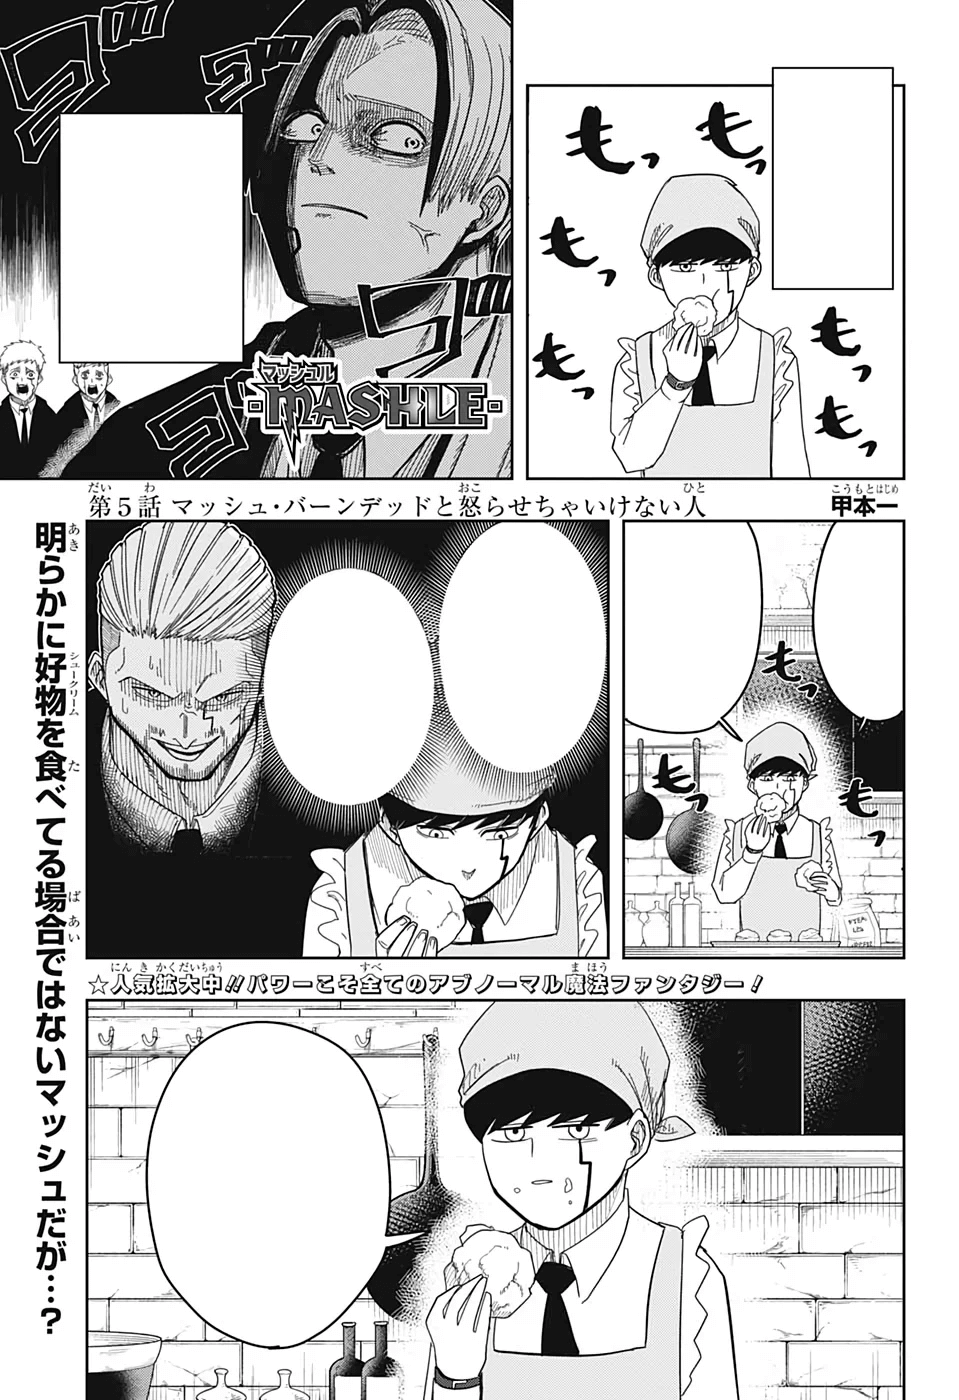 Mashle Capítulo 124 - Manga Online